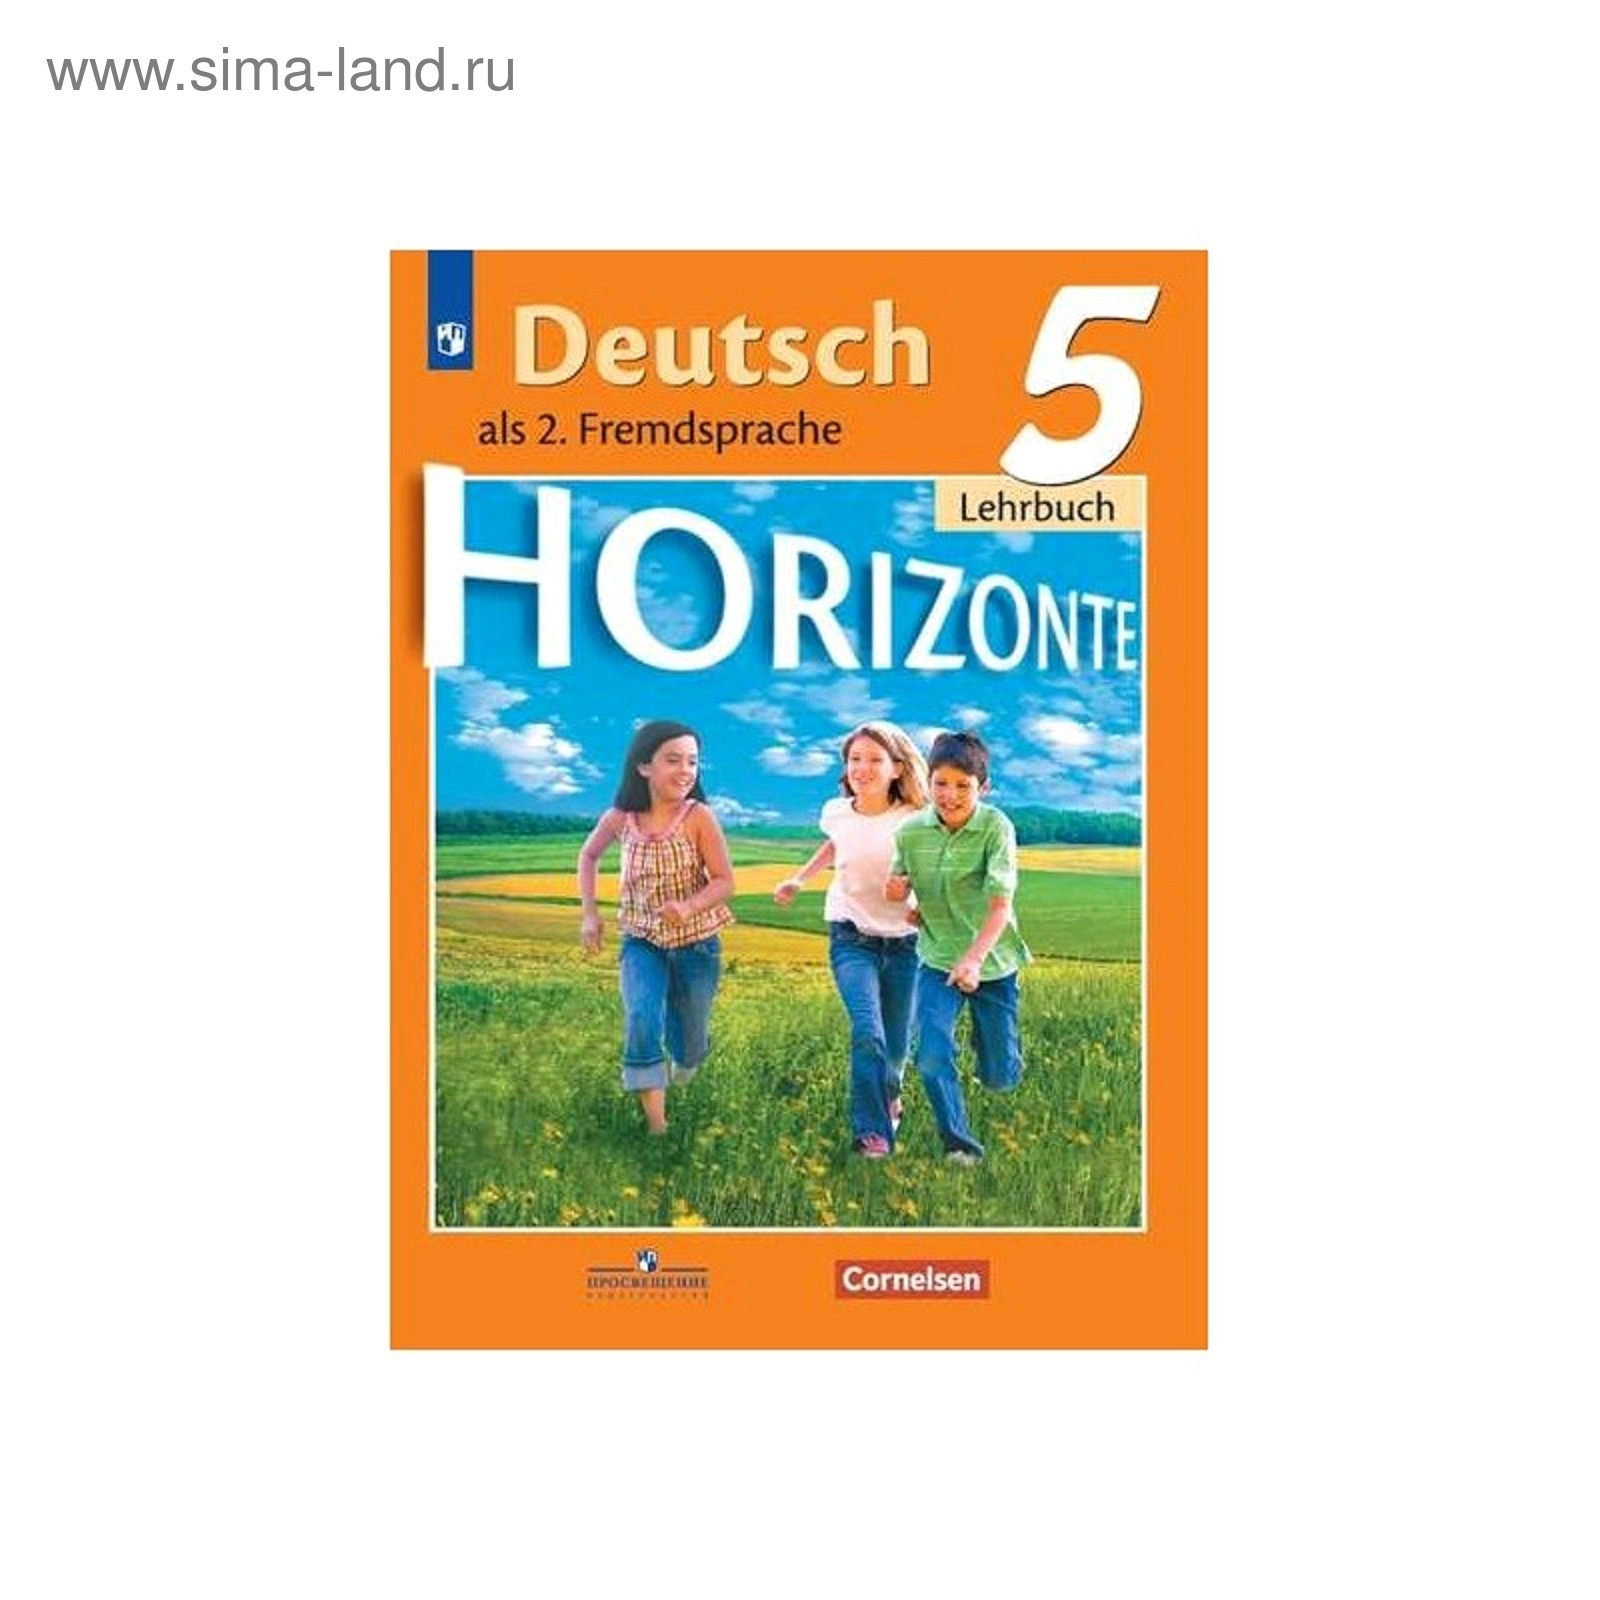 Немецкий язык Горизонты. Учебник 6 класс. Horizonte